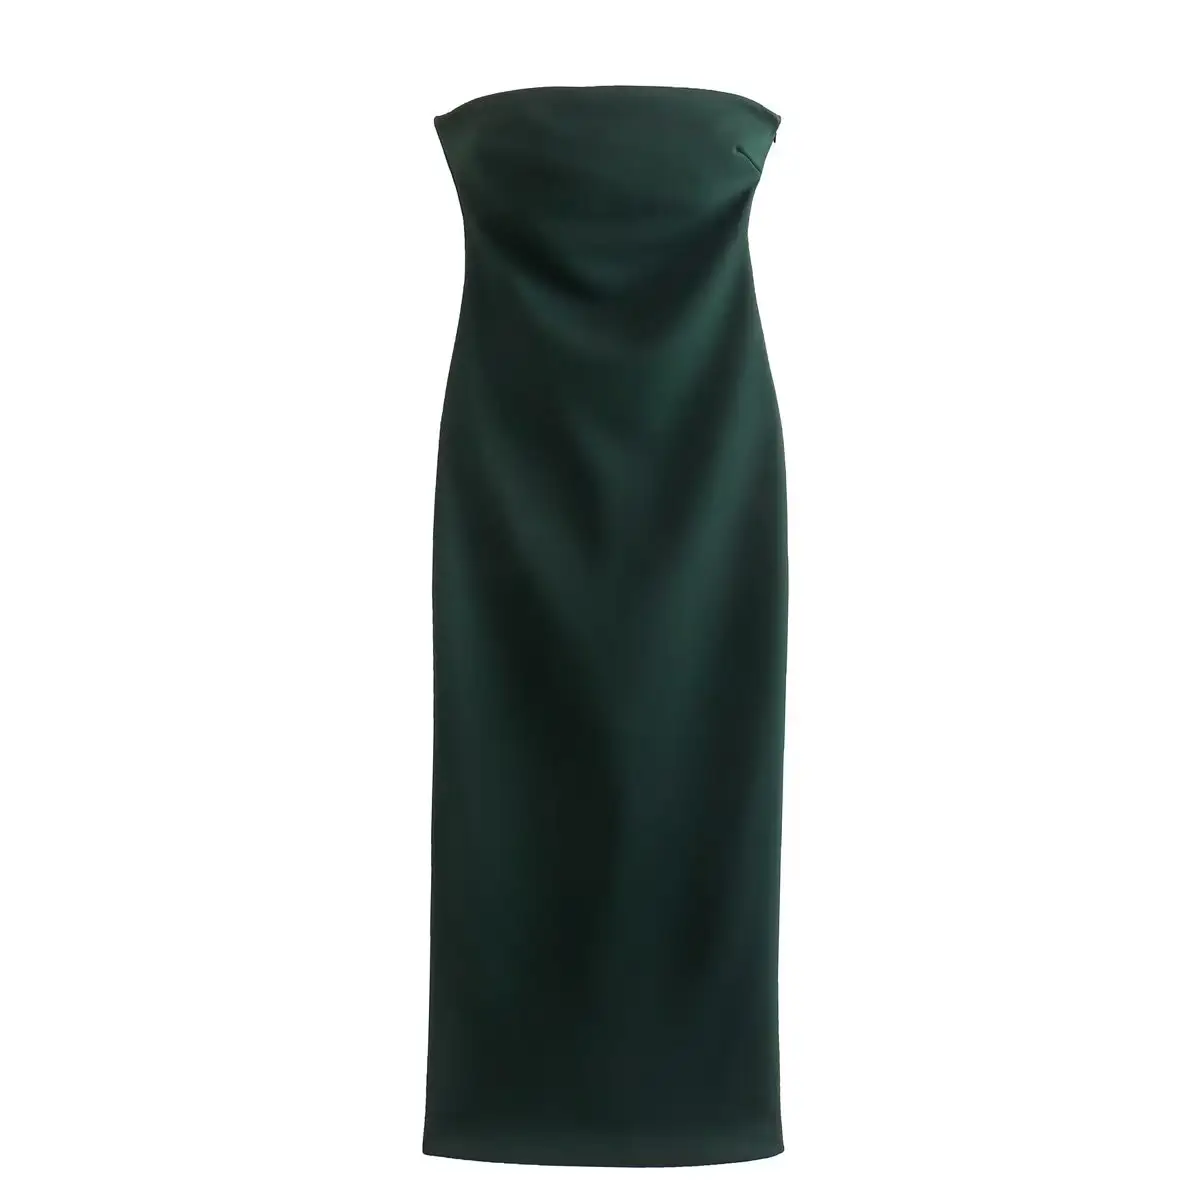 TAOP & Damen bekleidung New Dark Green Tube Top Mode Ärmelloses Kleid Abendkleid Lässig Schlank Luxus Langes Kleid